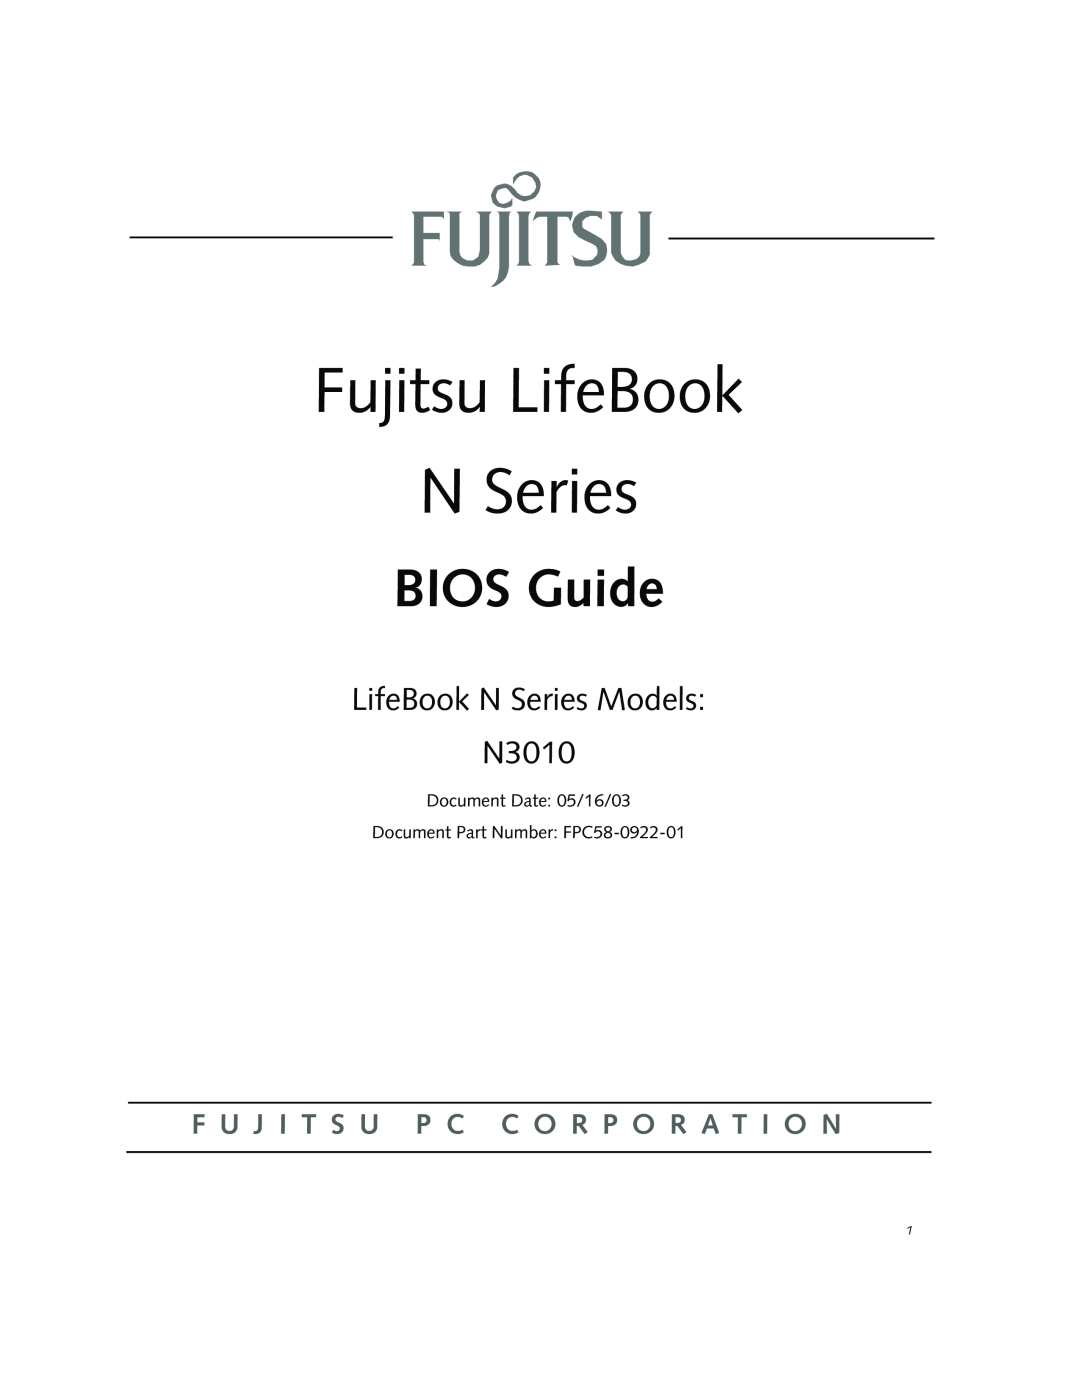 Fujitsu Siemens Computers manual Fujitsu LifeBook N Series, BIOS Guide, LifeBook N Series Models N3010 